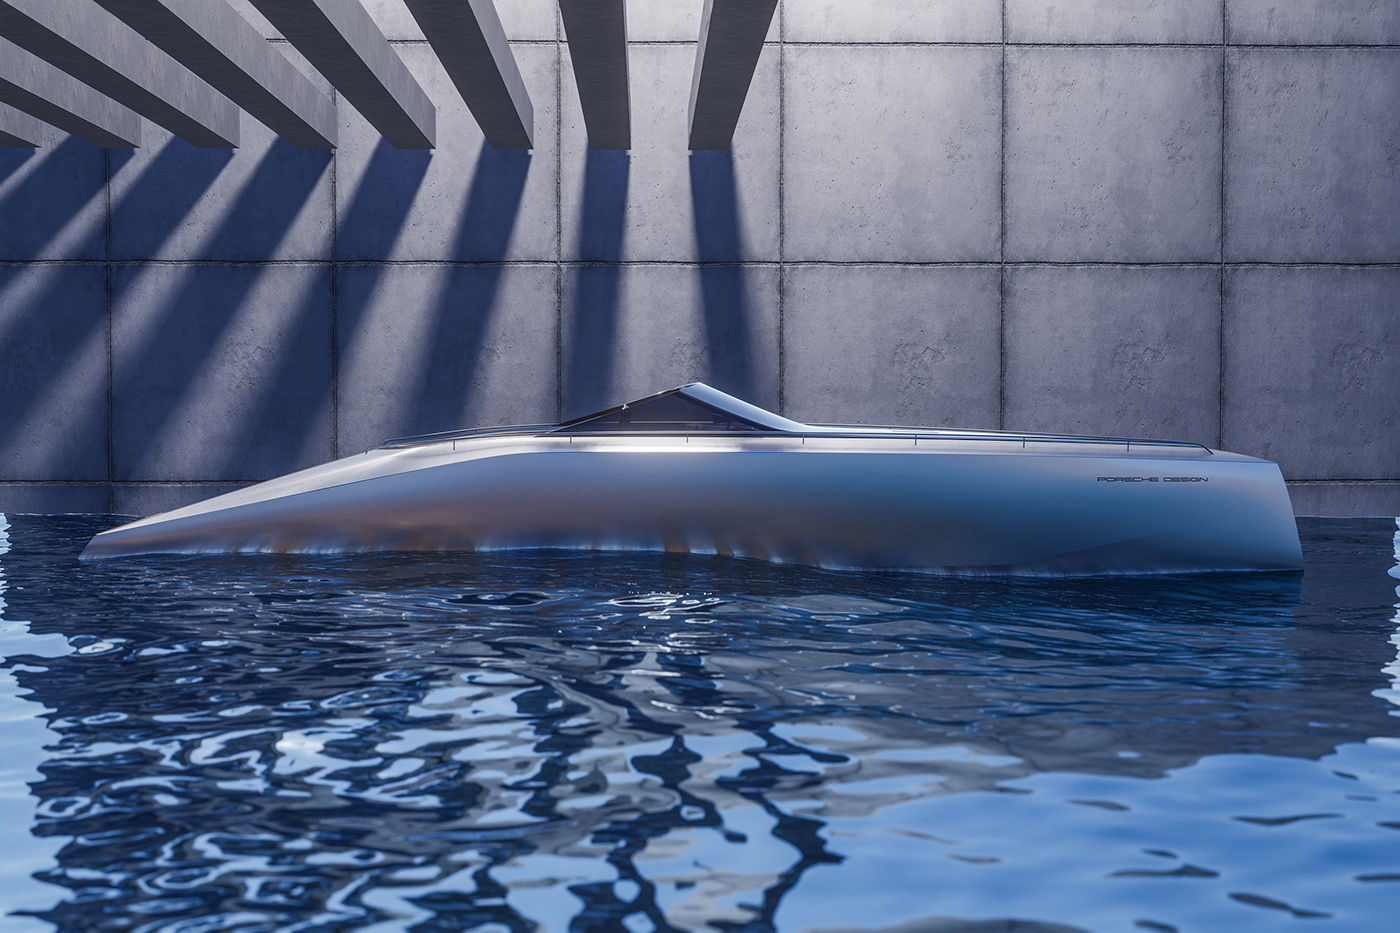 blender boat industrial design  Porsche porsche design speed boat Unreal Vehicle Vehicle Design yacht